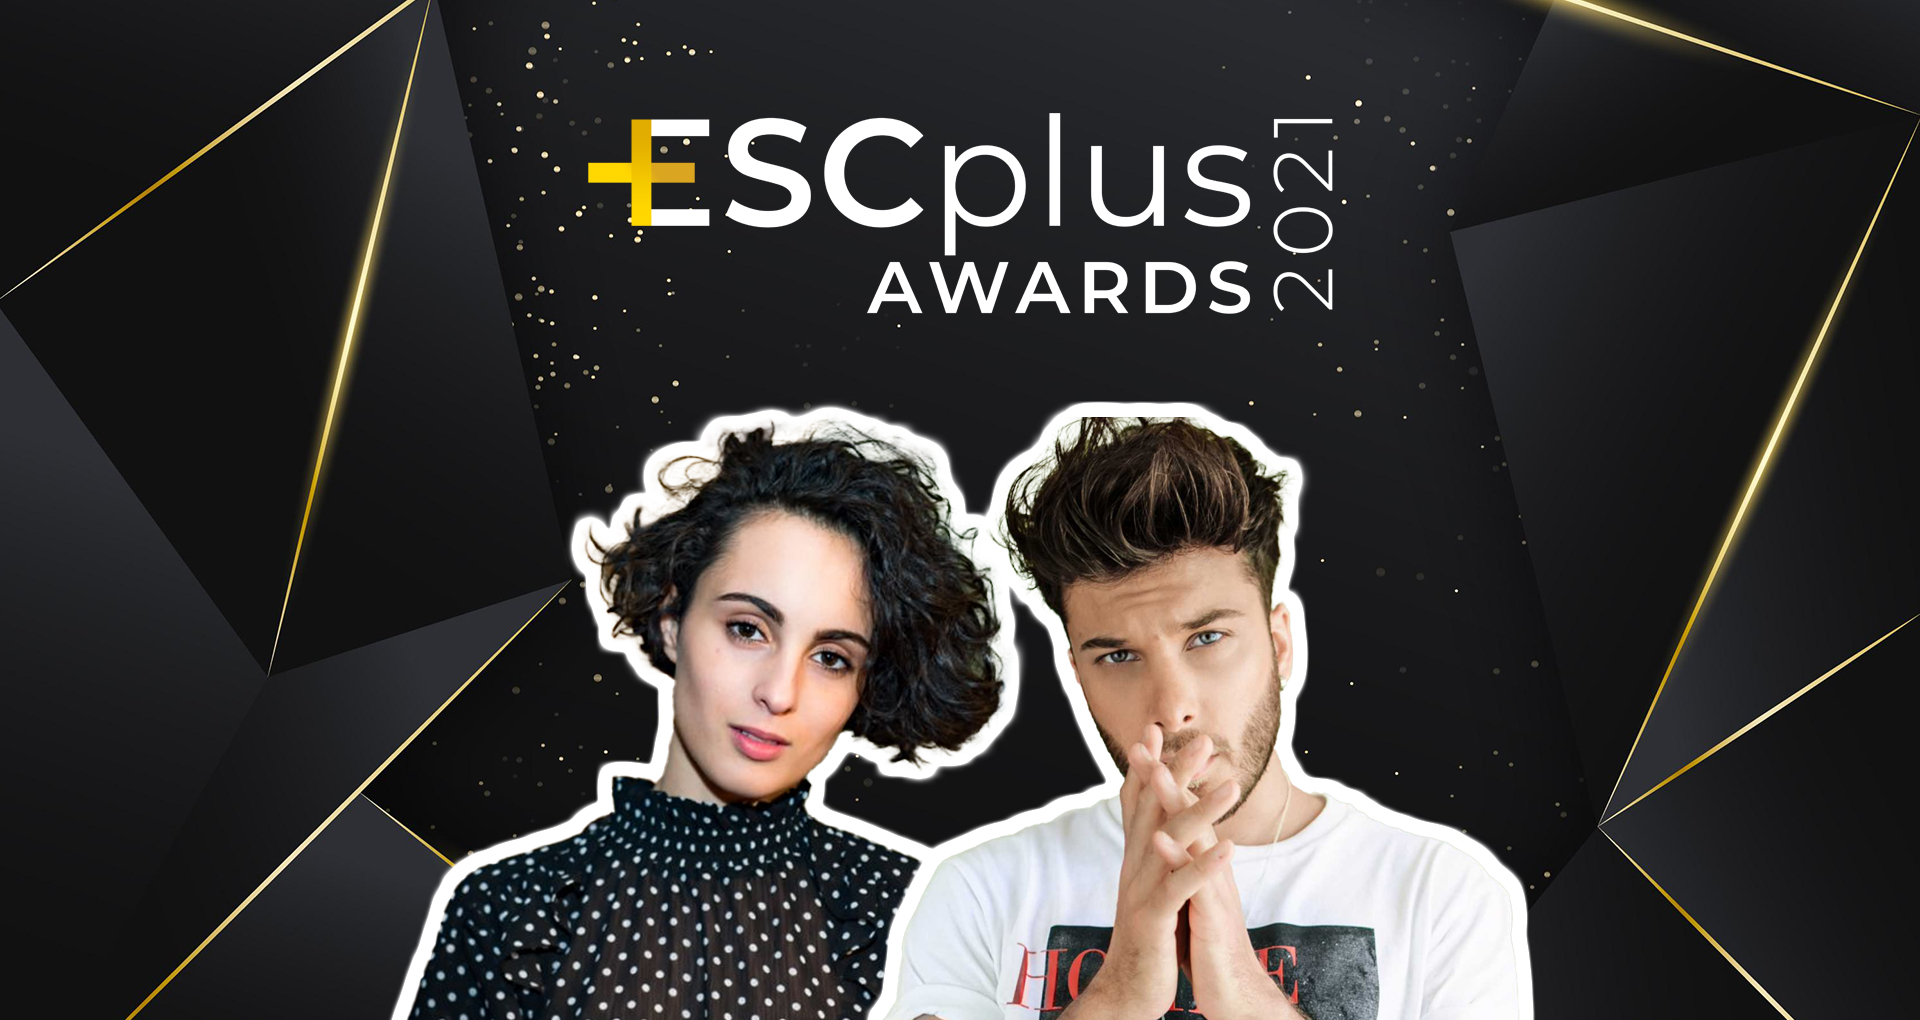 ESCplus Awards 2021: Barbara Pravi y Blas Cantó arrasan con 3 galardones cada uno